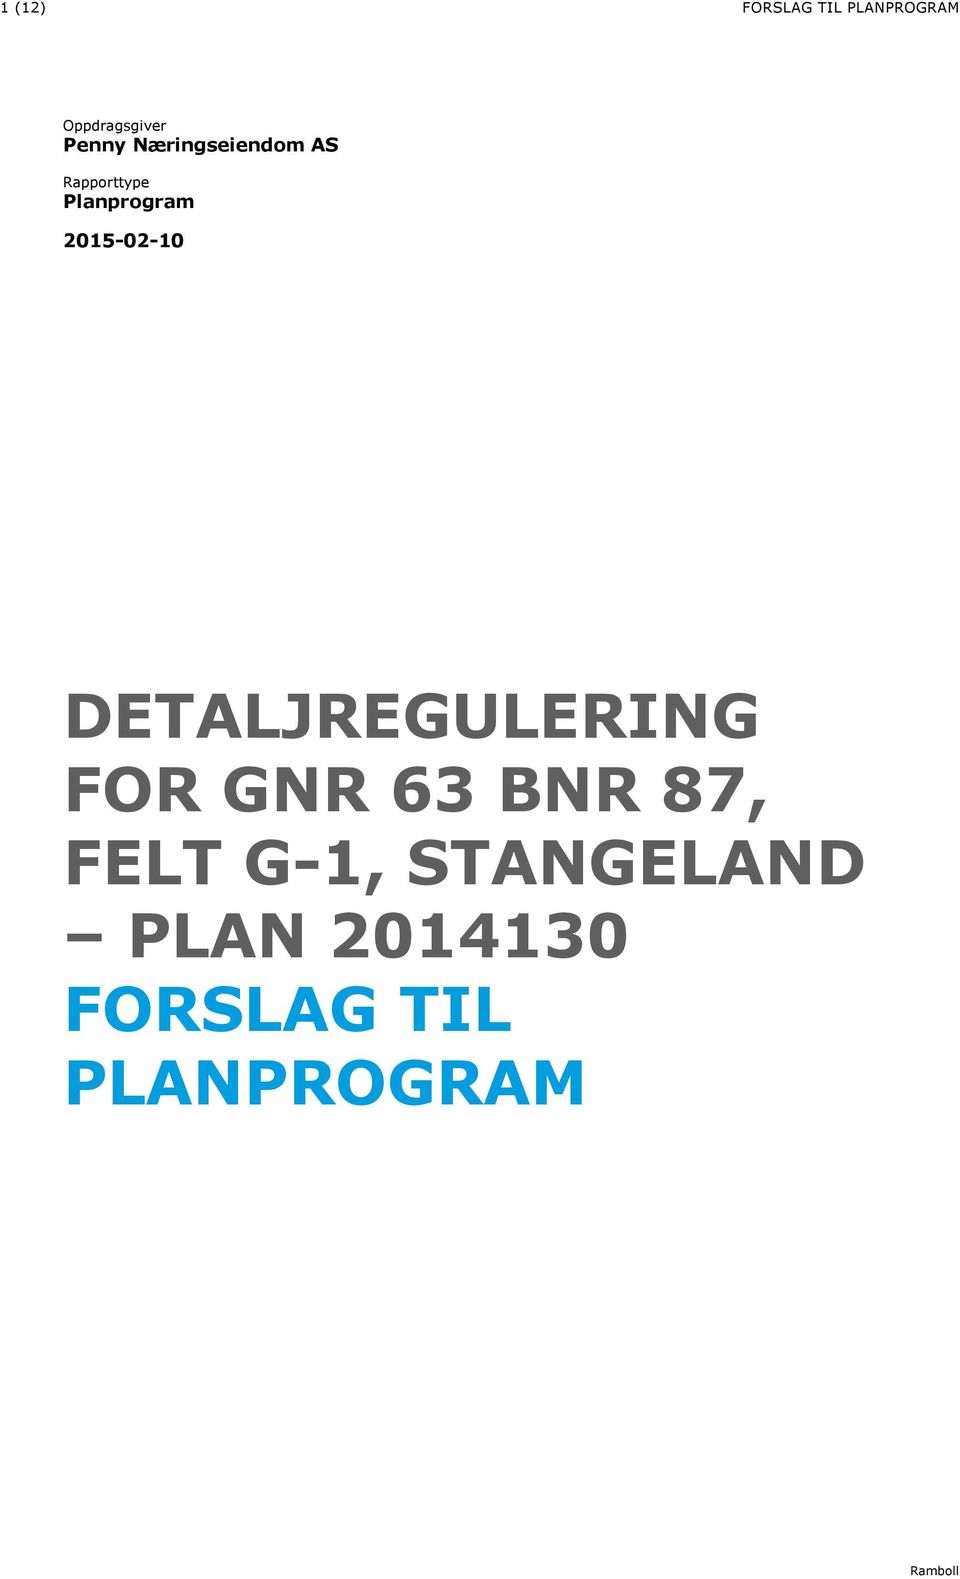 2015-02-10 DETALJREGULERING FOR GNR 63 BNR 87, FELT